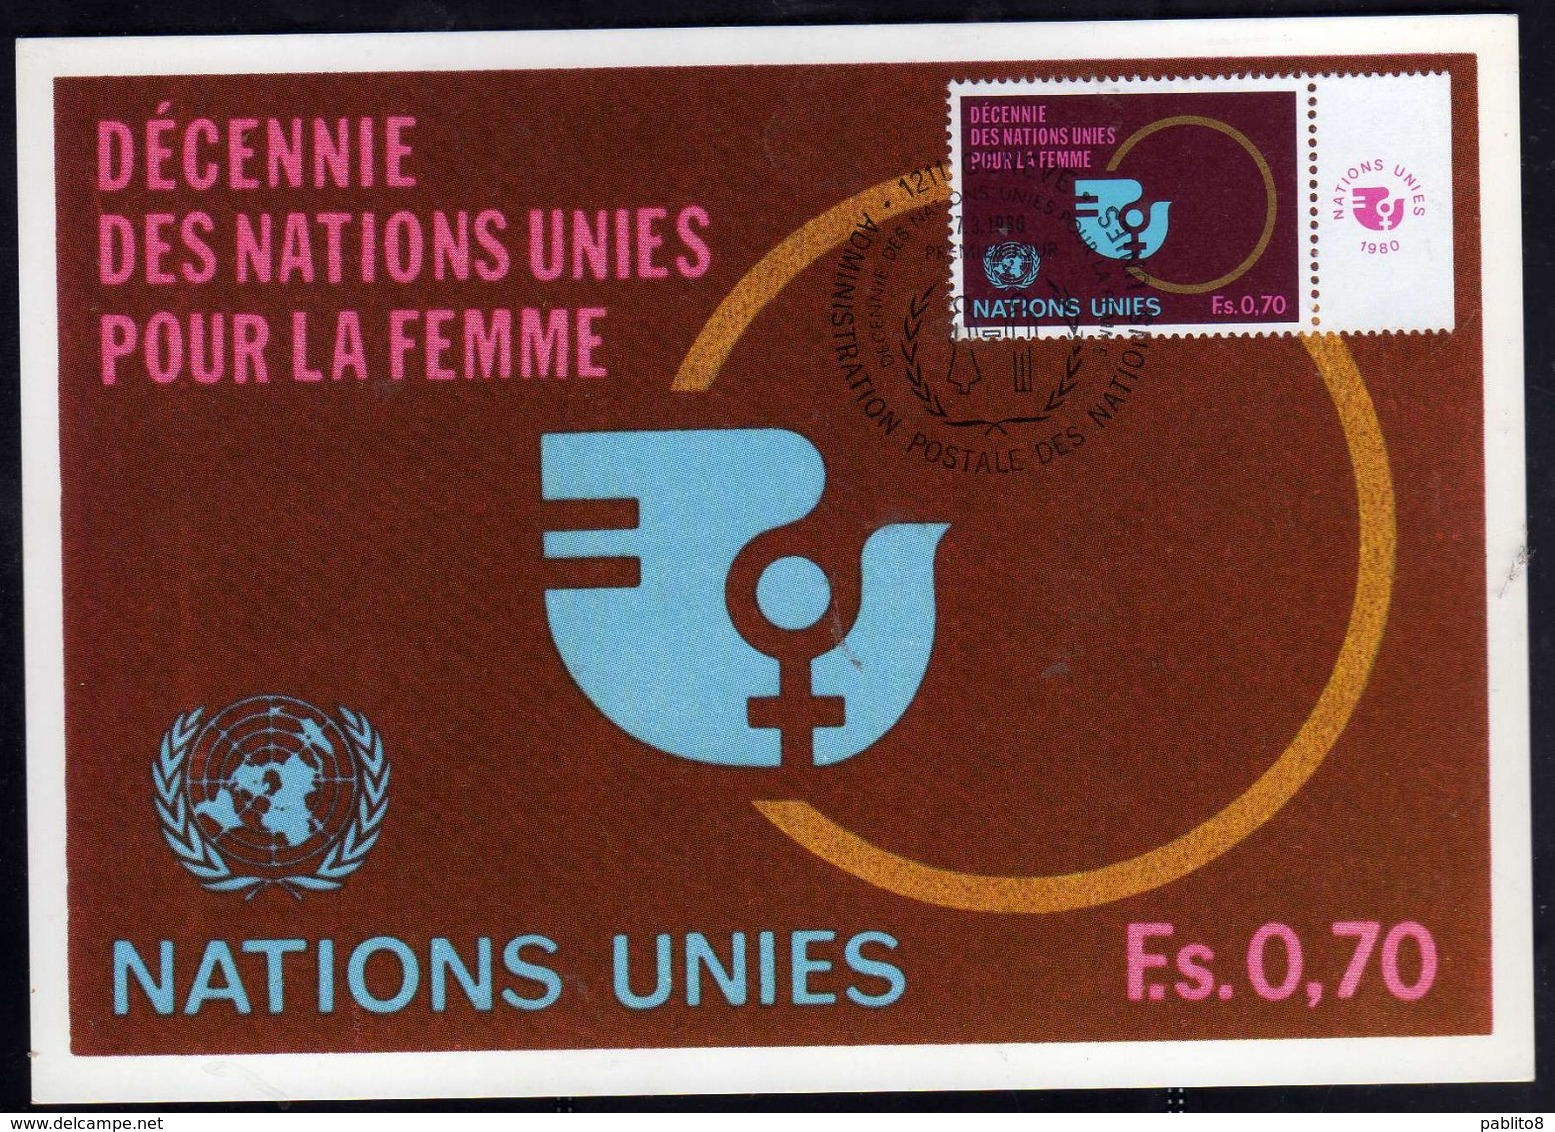 NATIONS UNIES GENEVE ONU UN UNO 7 3 1980 POUR LA FEMME FOR WOMEN PER LA DONNA FDC MAXI CARD CARTOLINA MAXIMUM - Maximum Cards